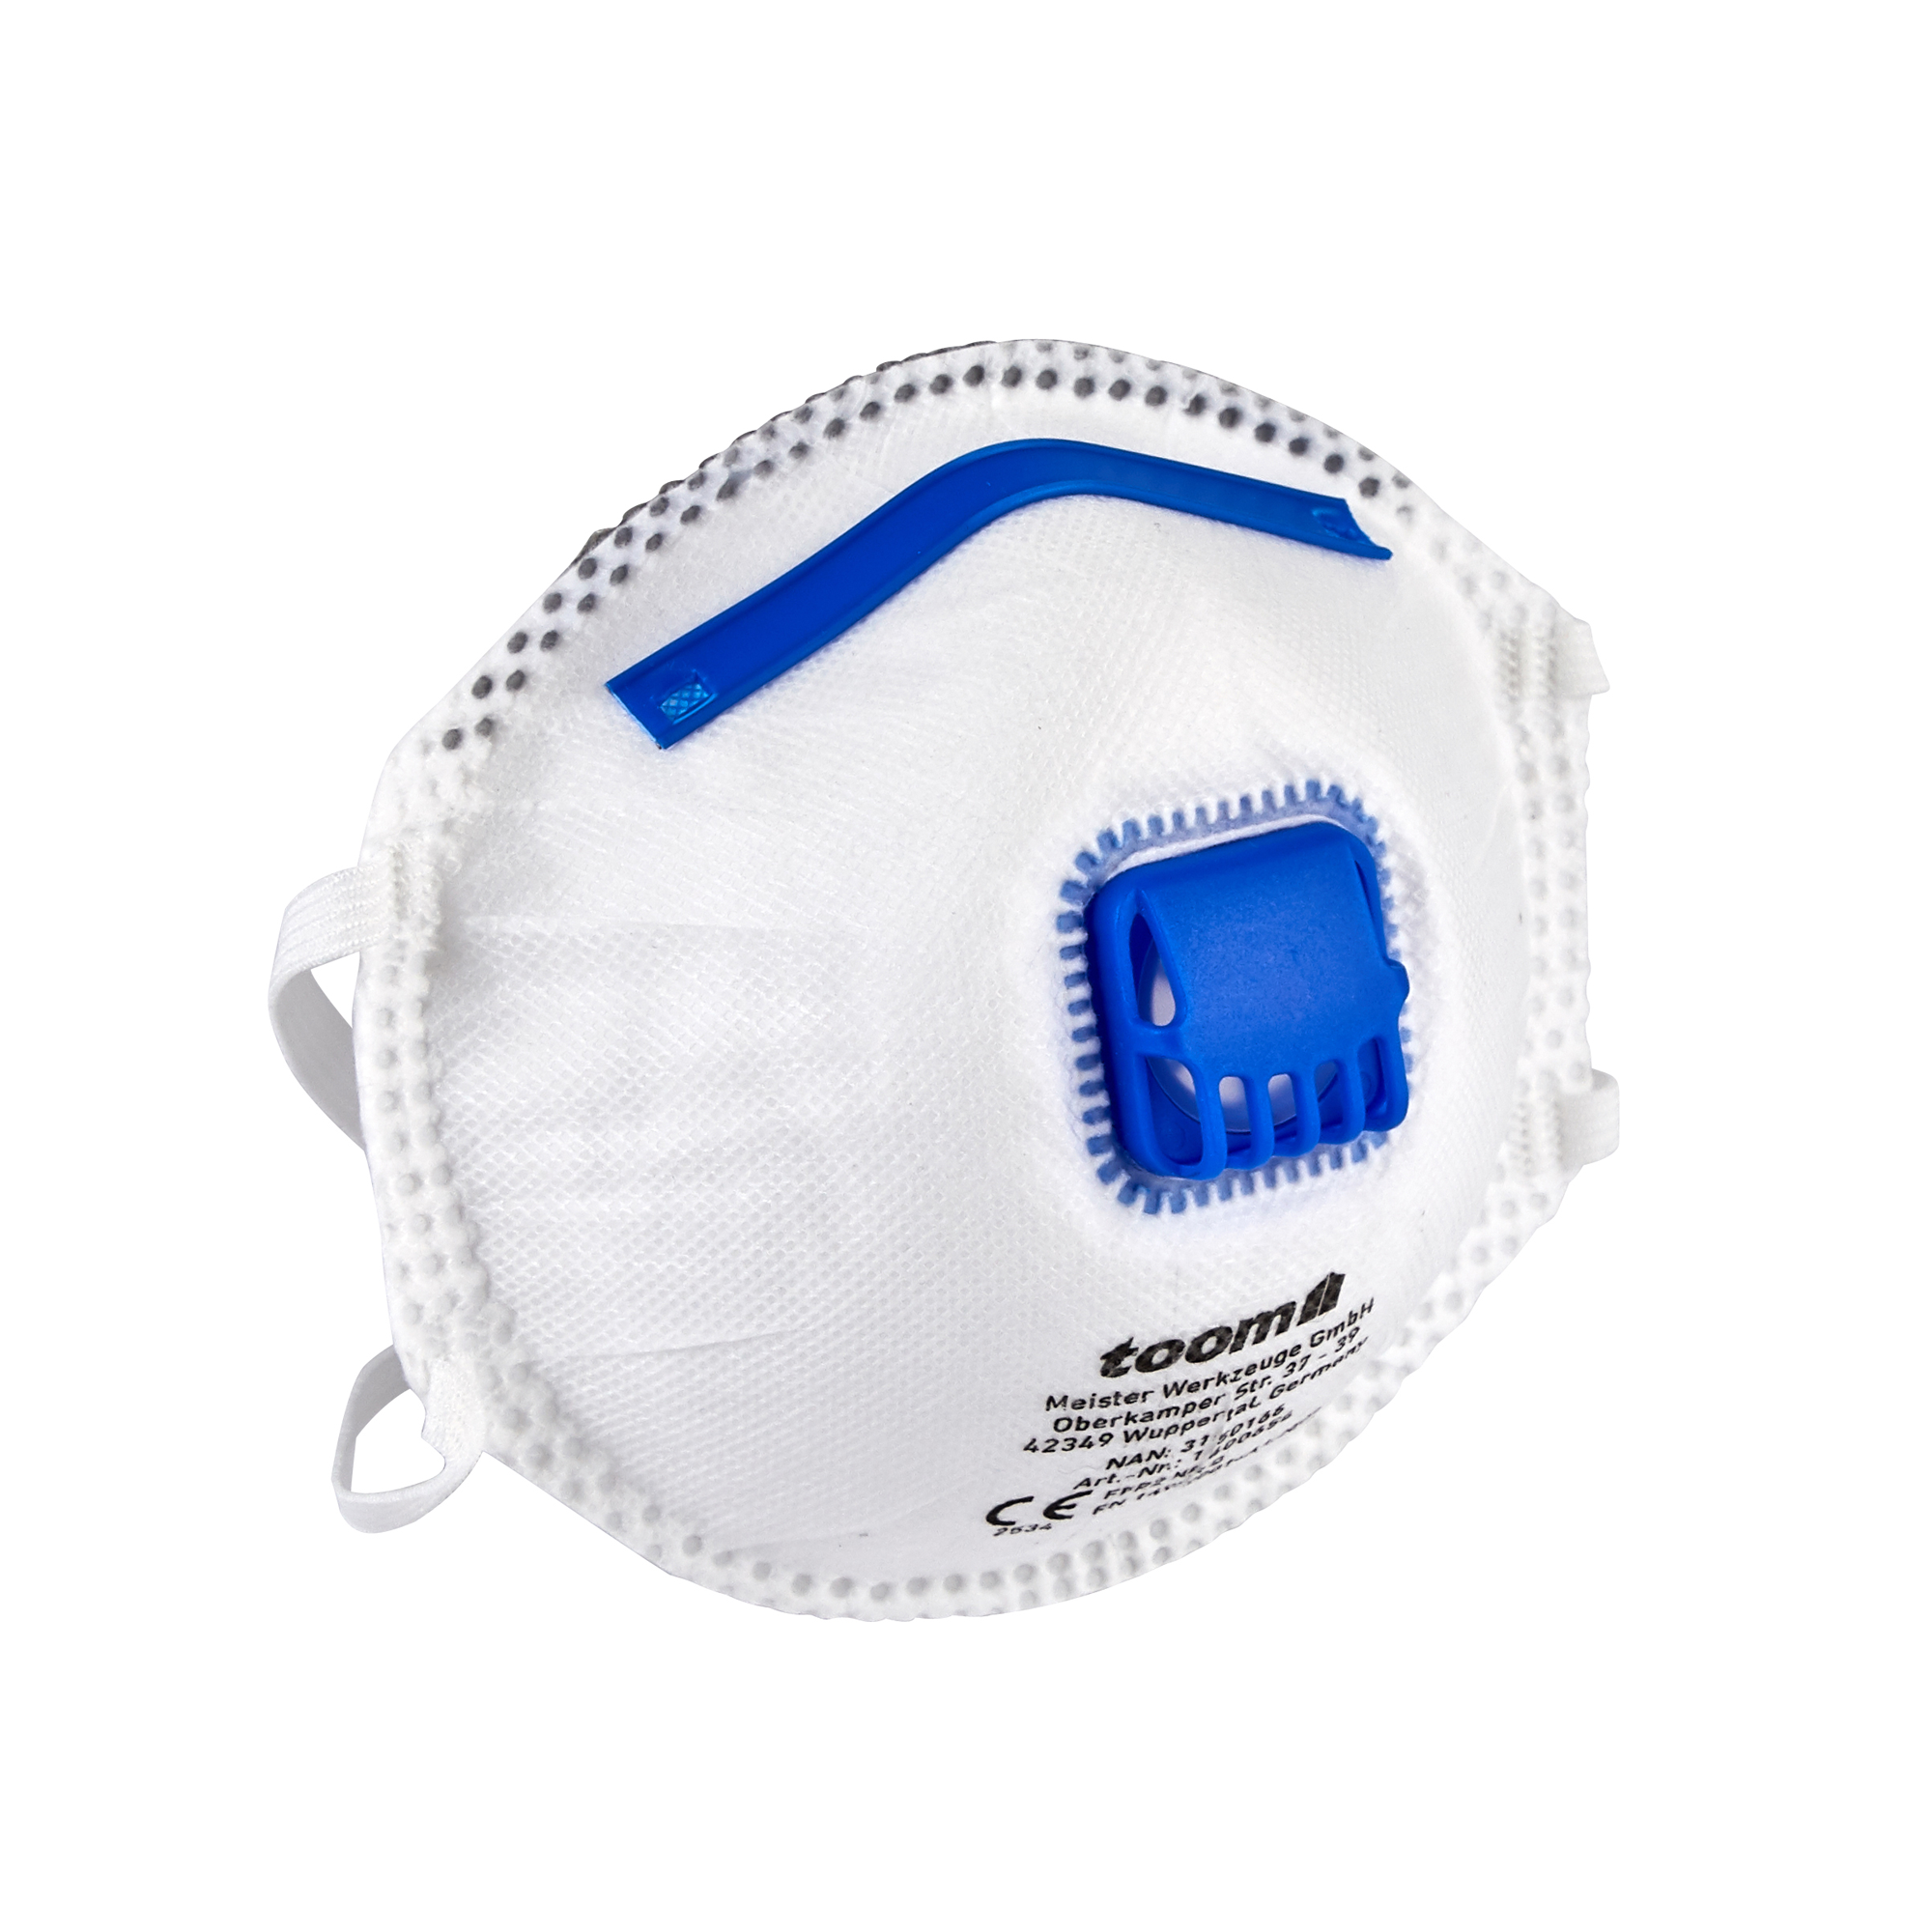 FFP2-Atemschutzmaske mit Ventil, 1 Stück + product picture